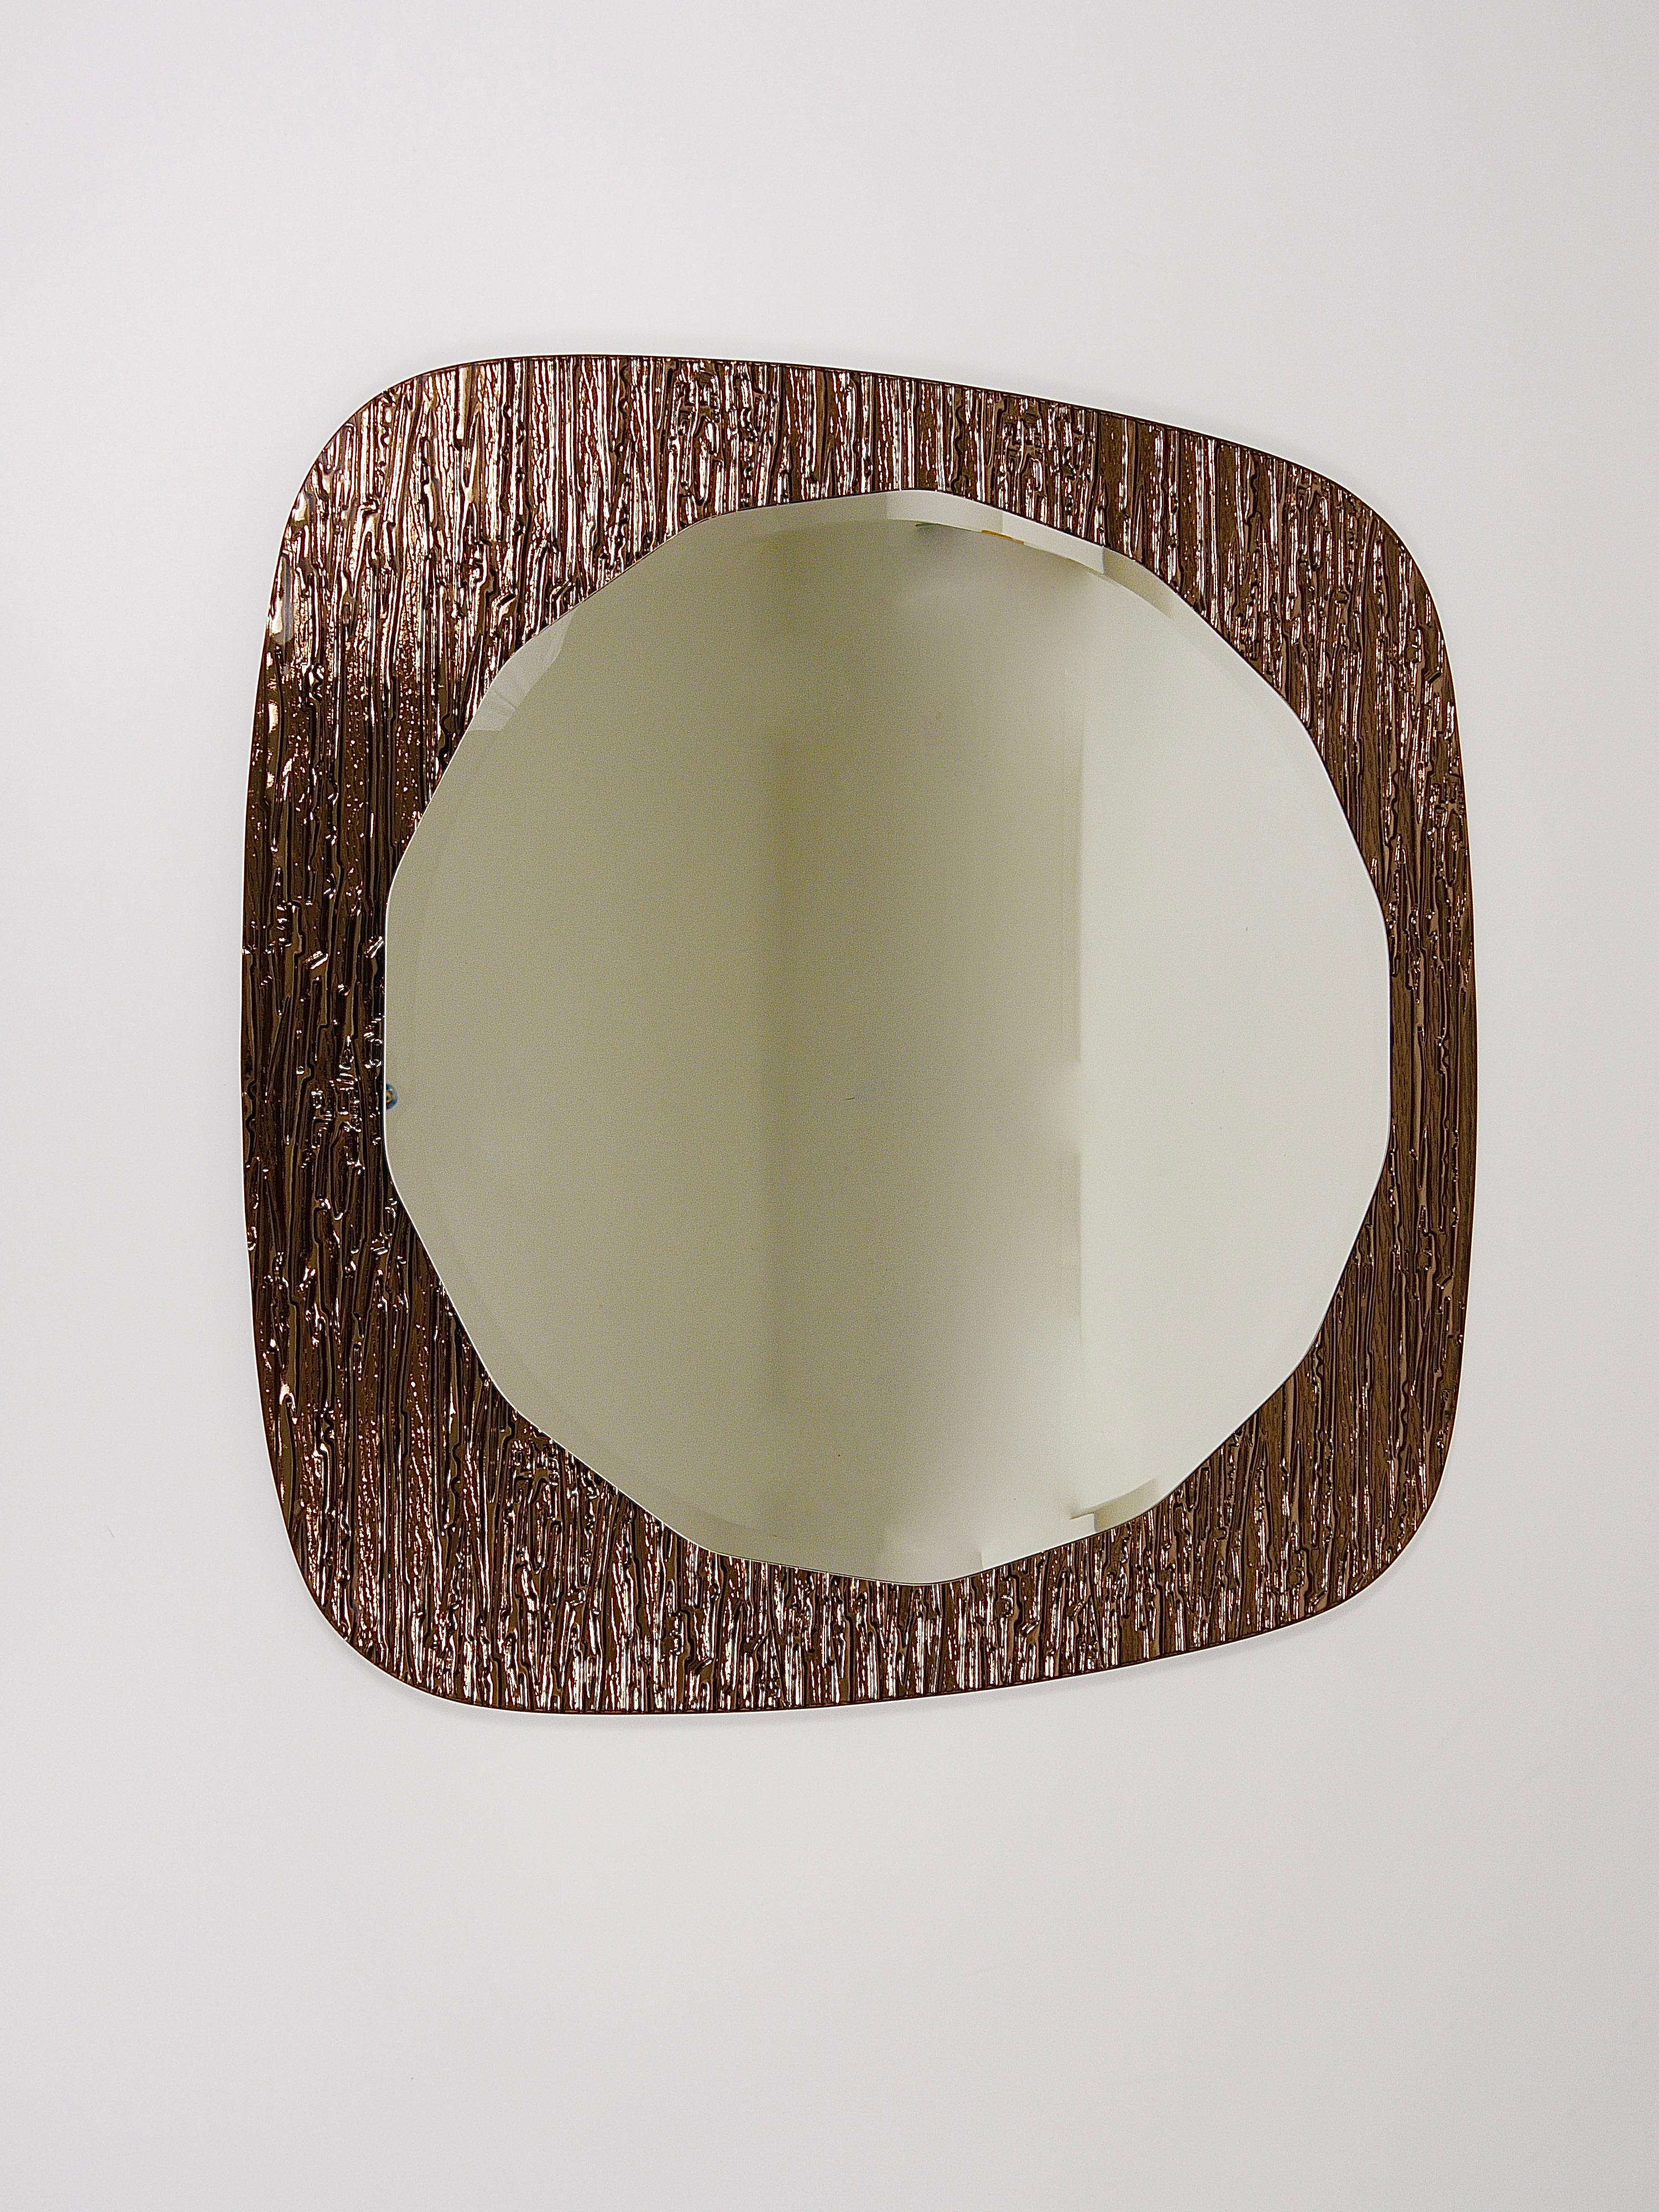 Miroir mural italien à double niveau, impressionnant et de qualité supérieure, datant des années 1960, fabriqué en Italie par Cristal Arte / Crystal Arte. Elle présente un miroir rond festonné et facetté sur un verre miroir à fond brun bronze doré.